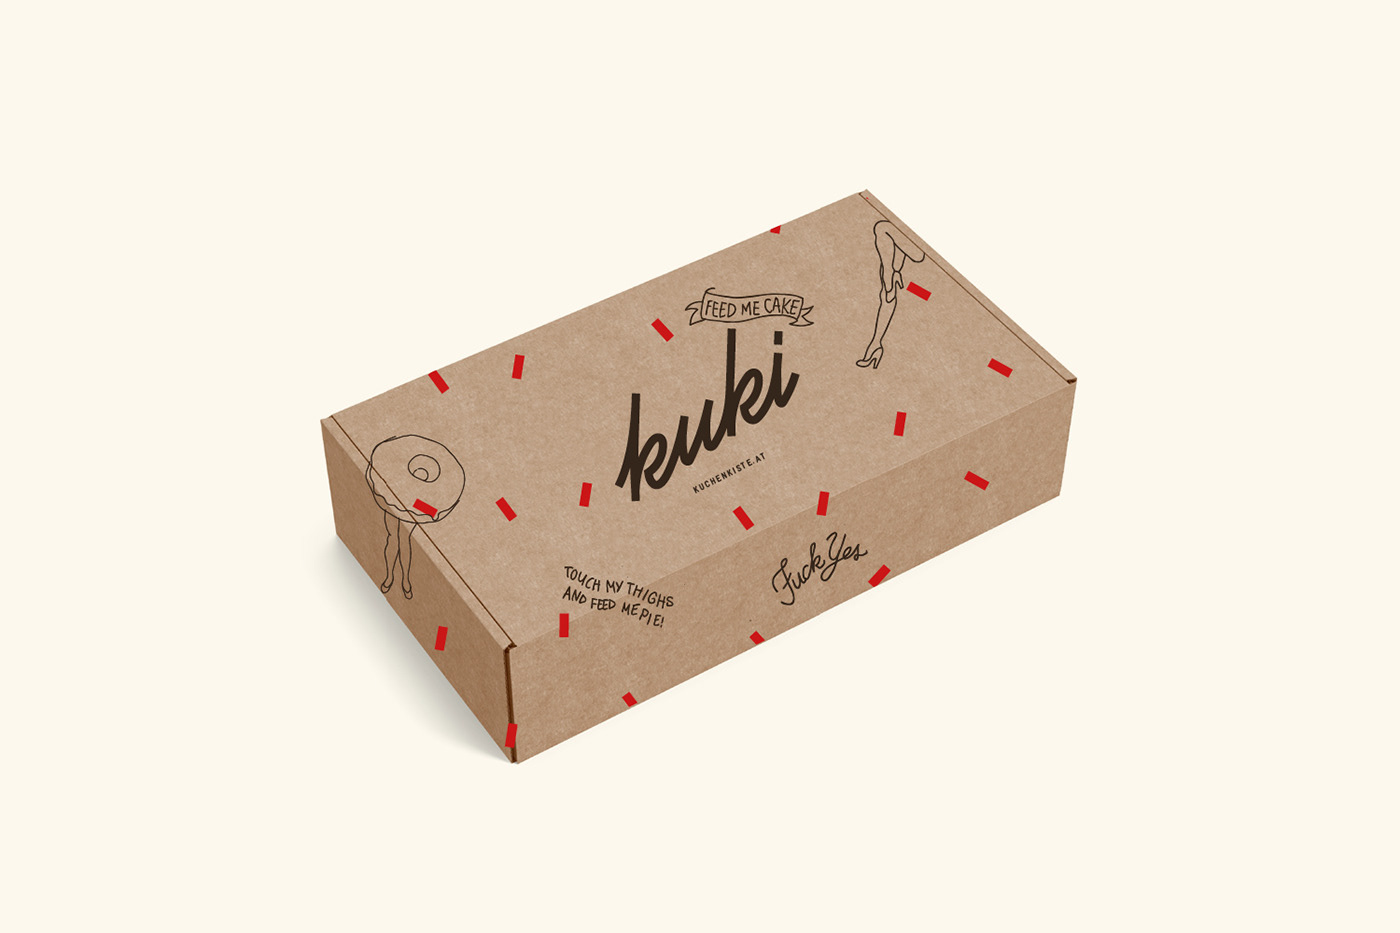 Kuki Kuchenkiste Packaging Design by Bureau Rabensteiner 